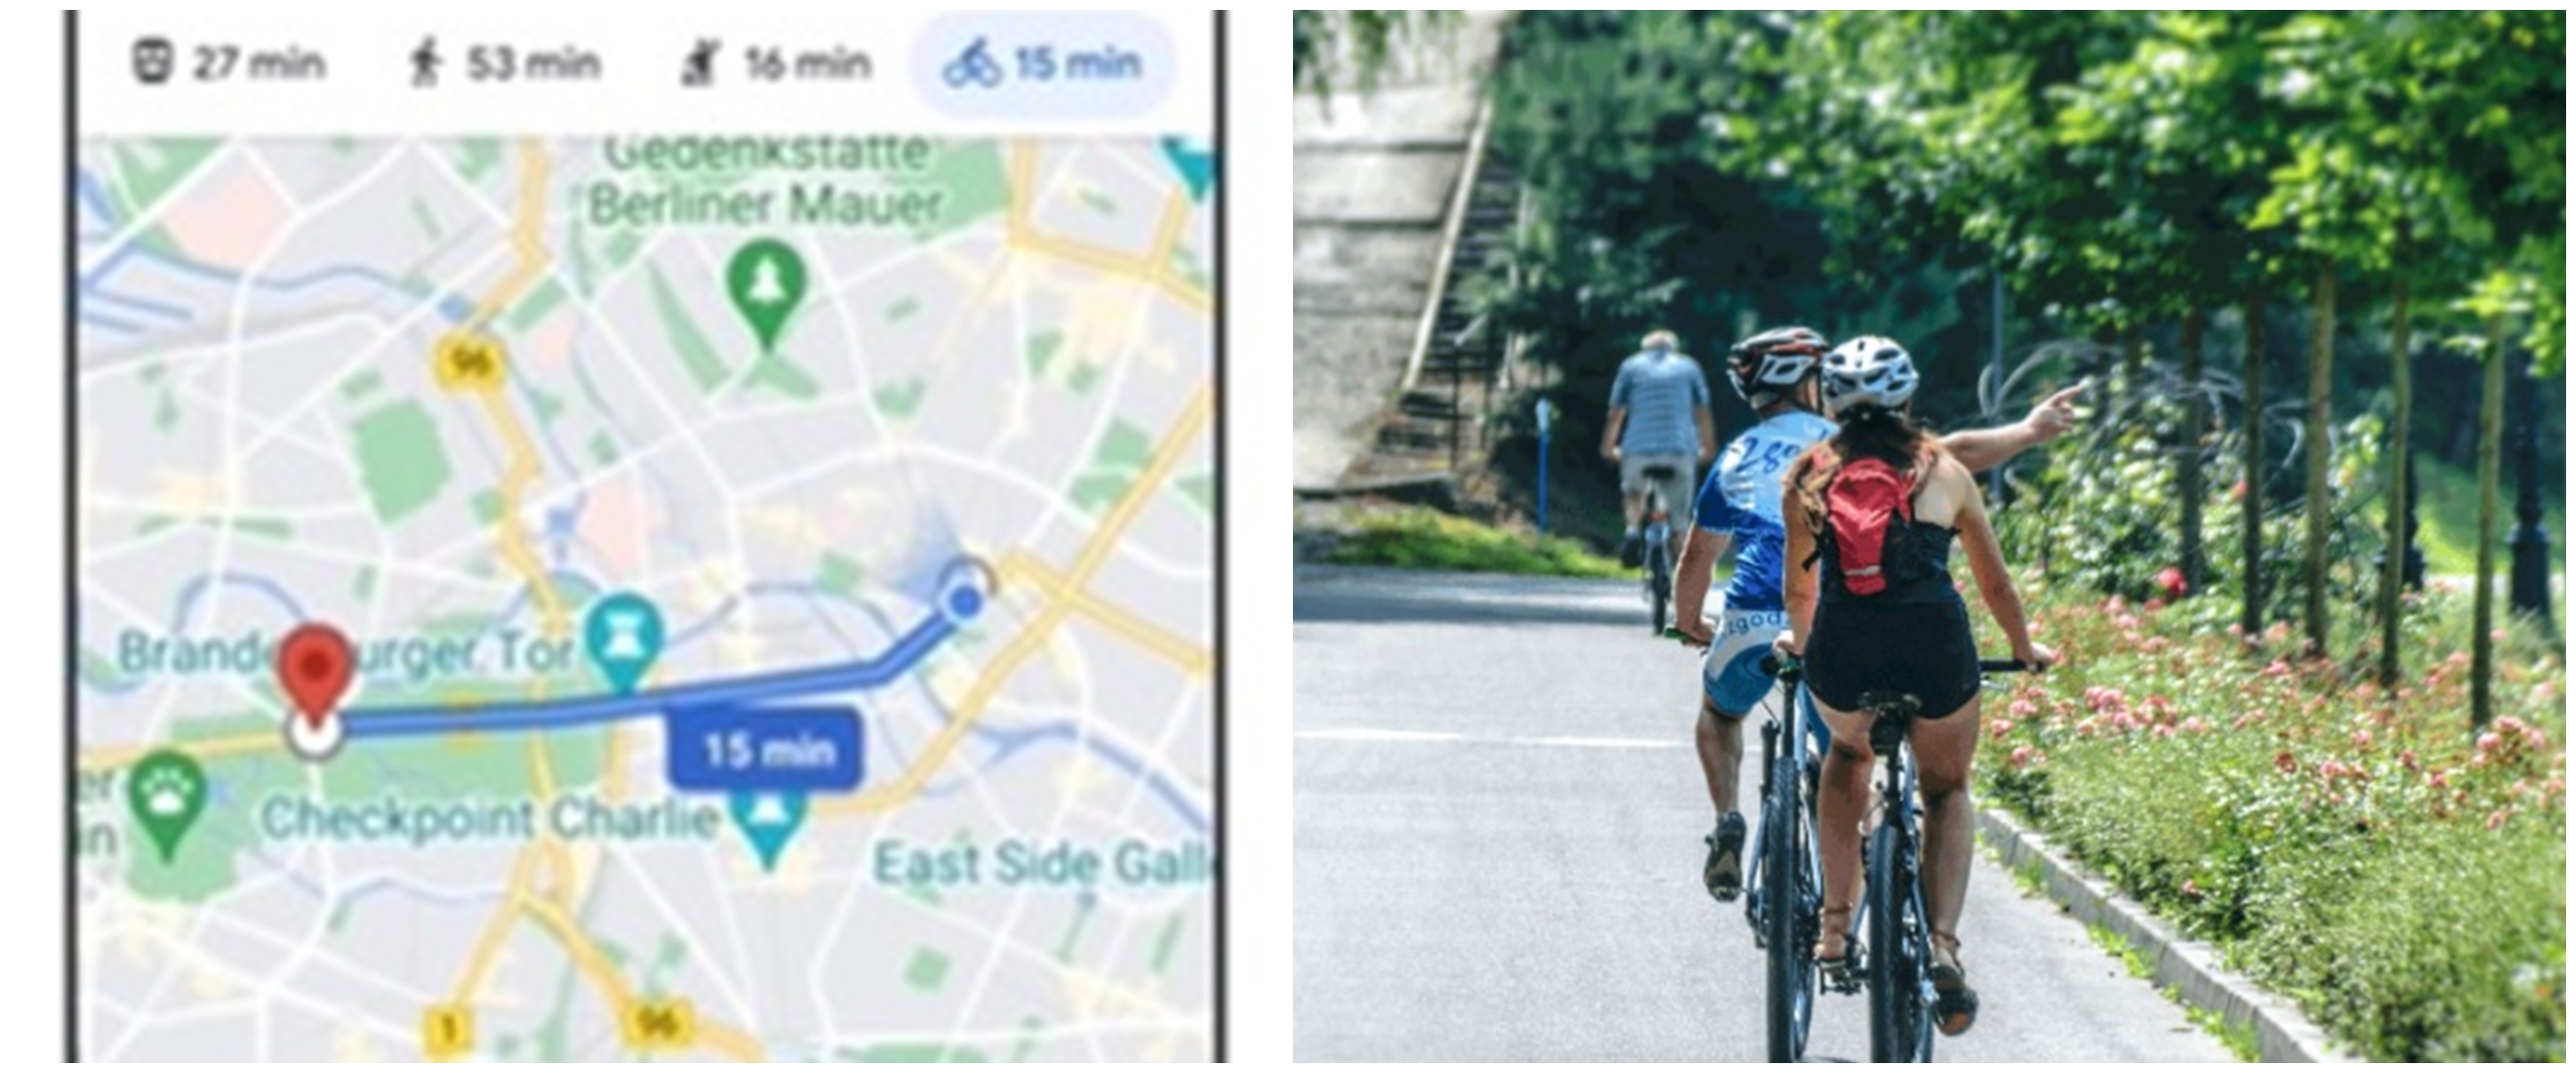 3 Cara bernavigasi ramah lingkungan di Google Maps, pesepeda terbantu